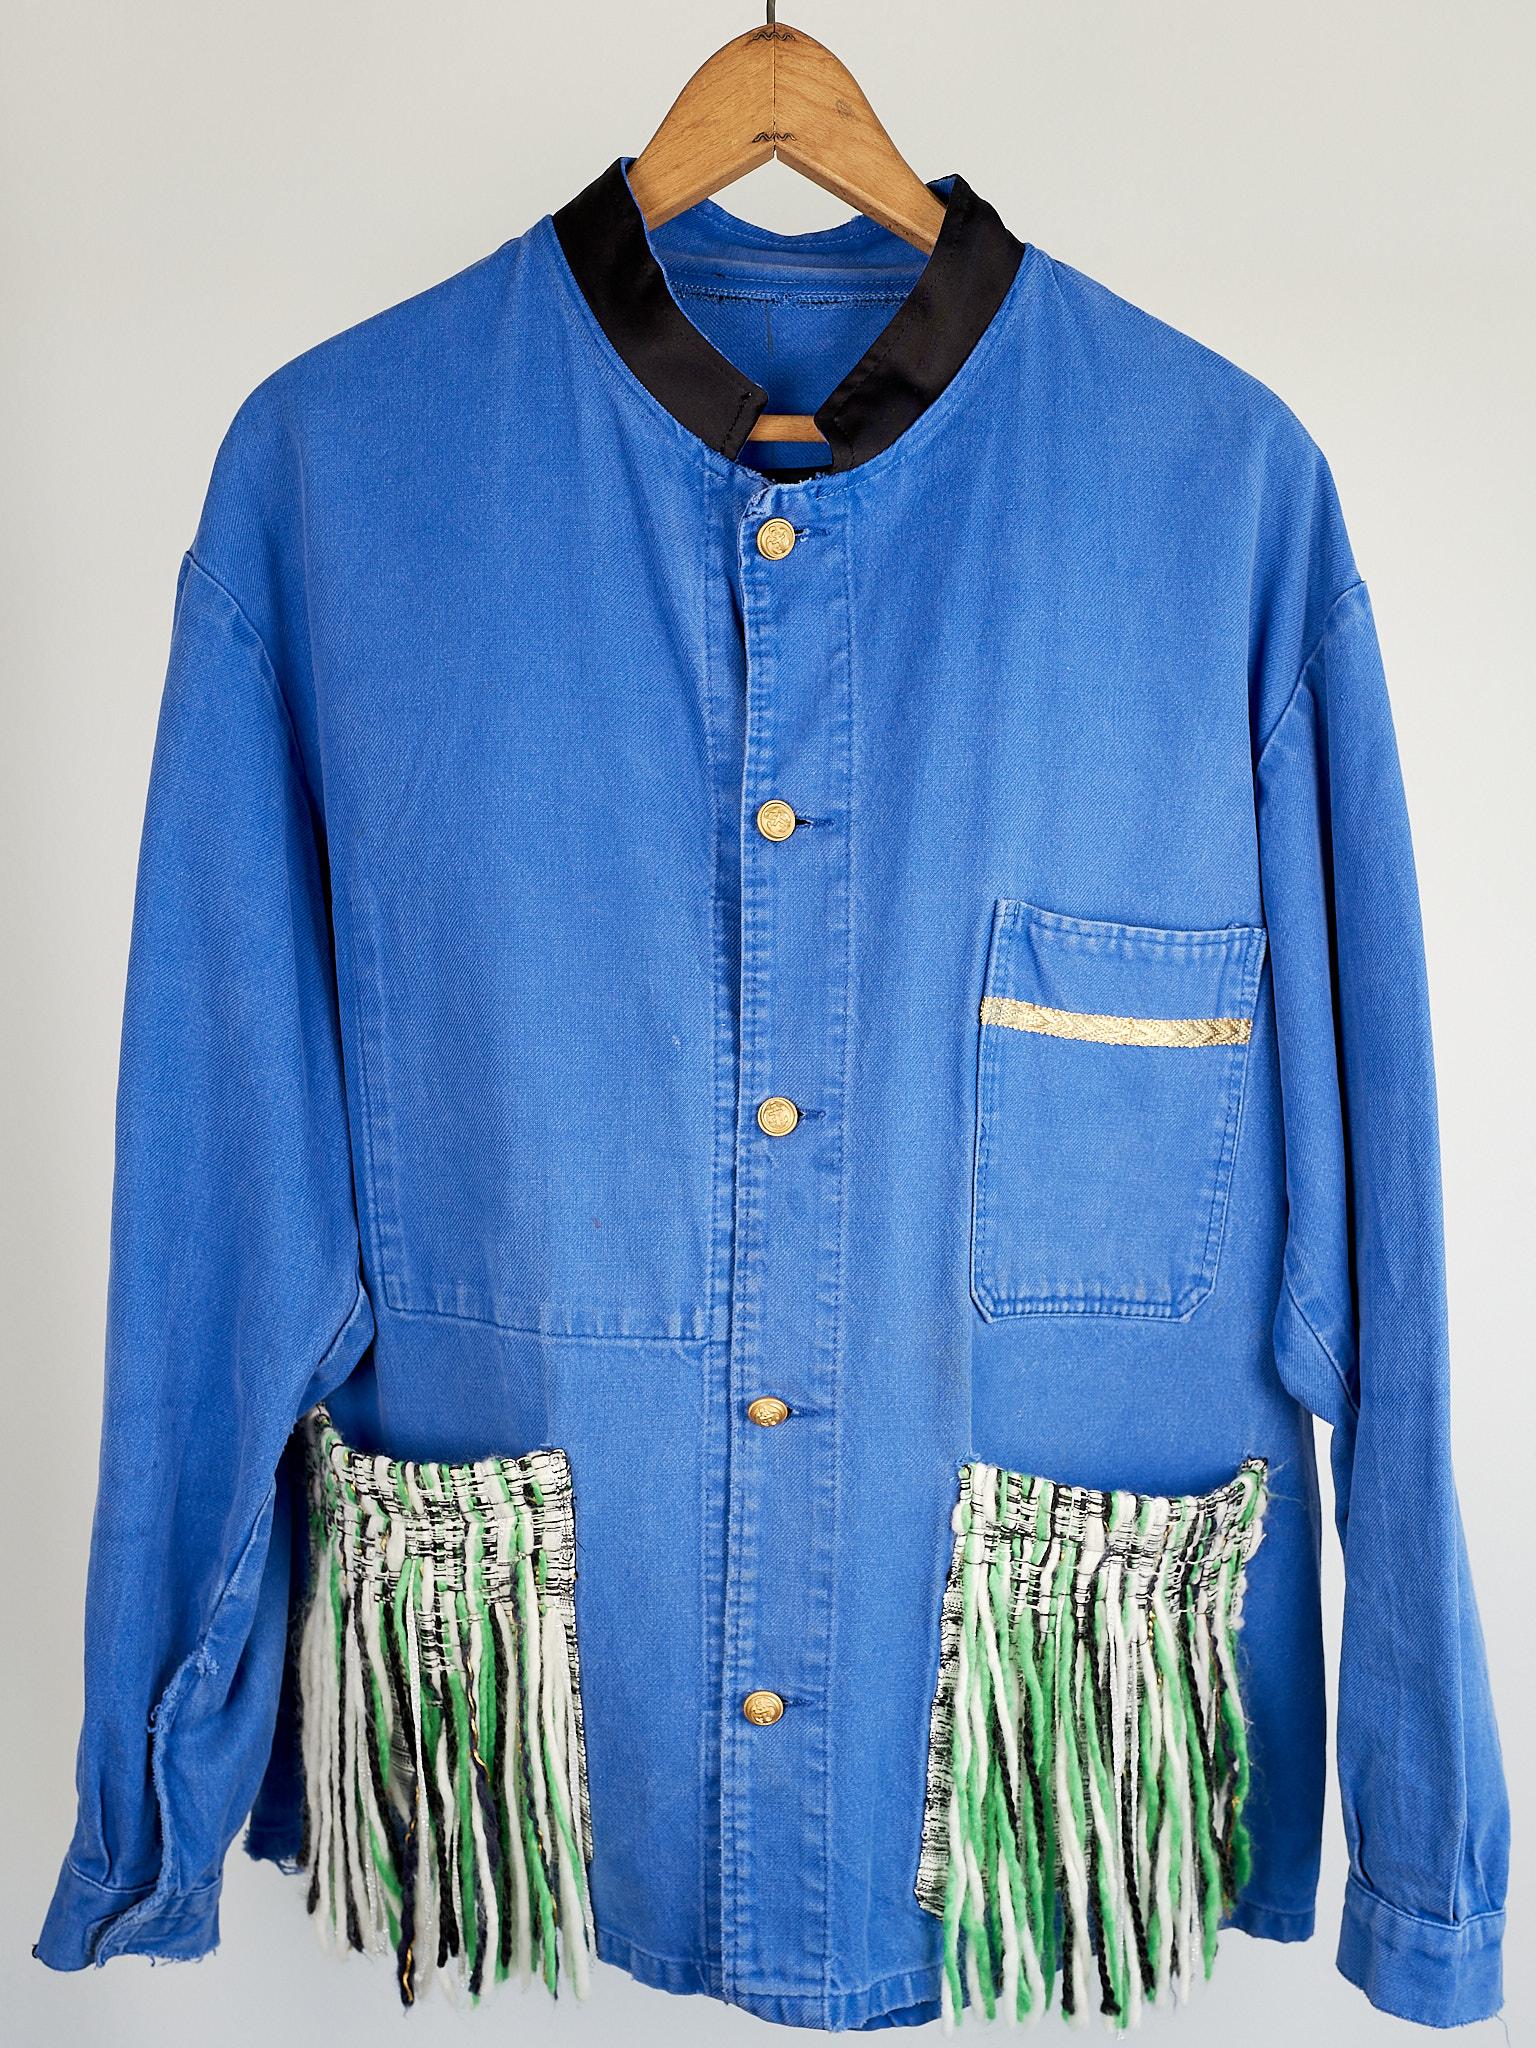  Wool Fringes Embellished Pockets Blue Cobalt Cotton French Work Wear J Dauphin 1